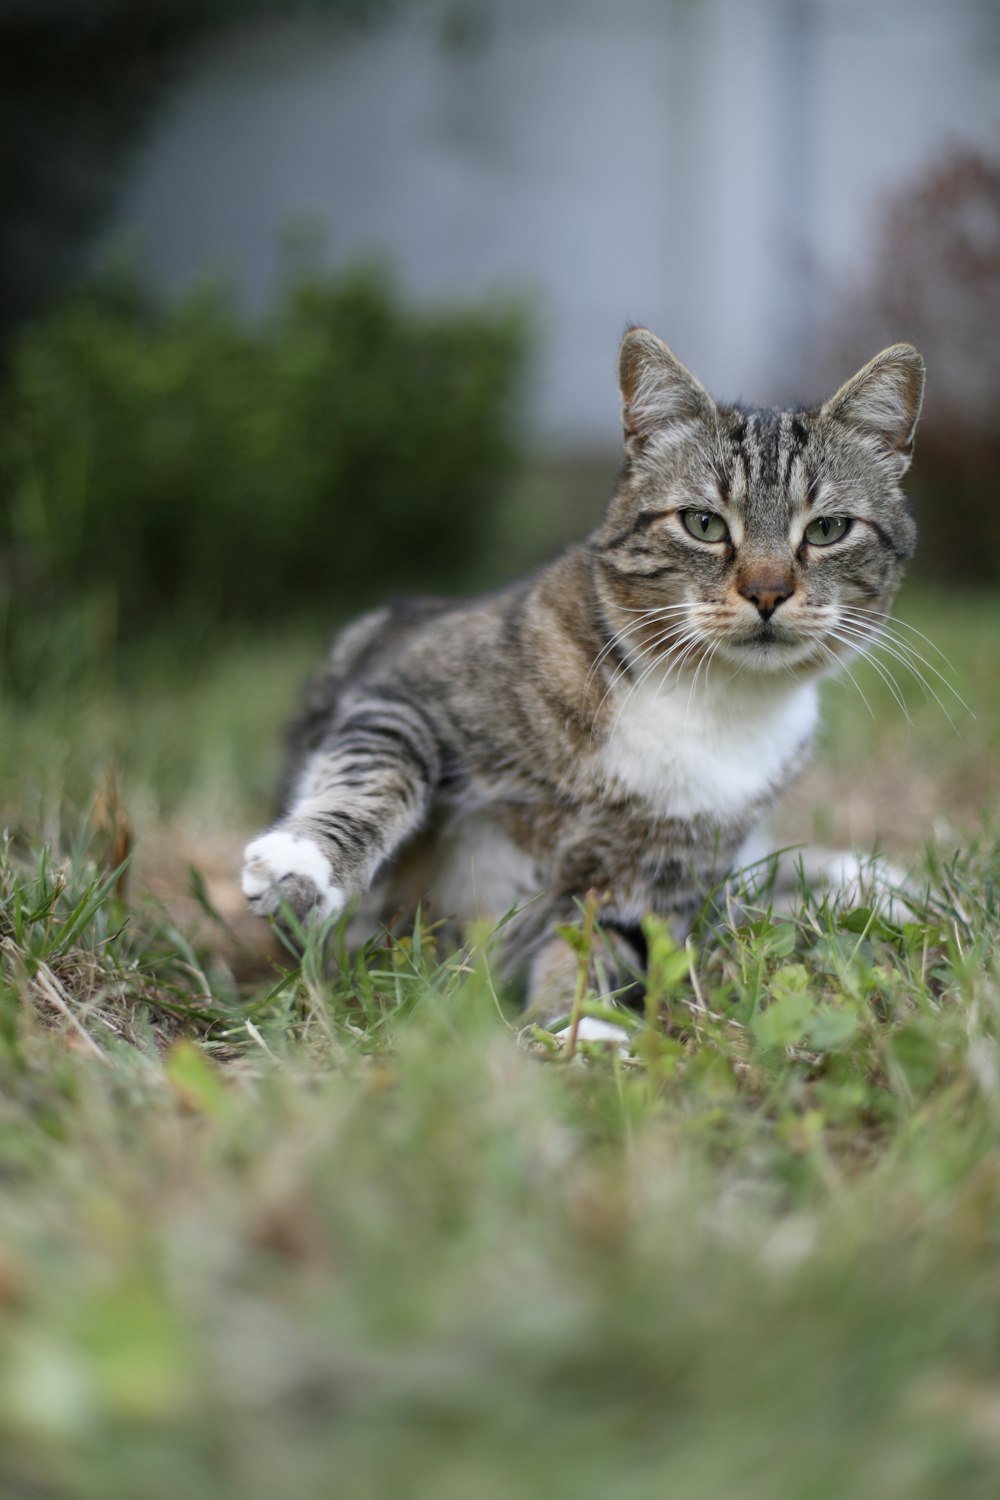 a cat walking across a lush green field